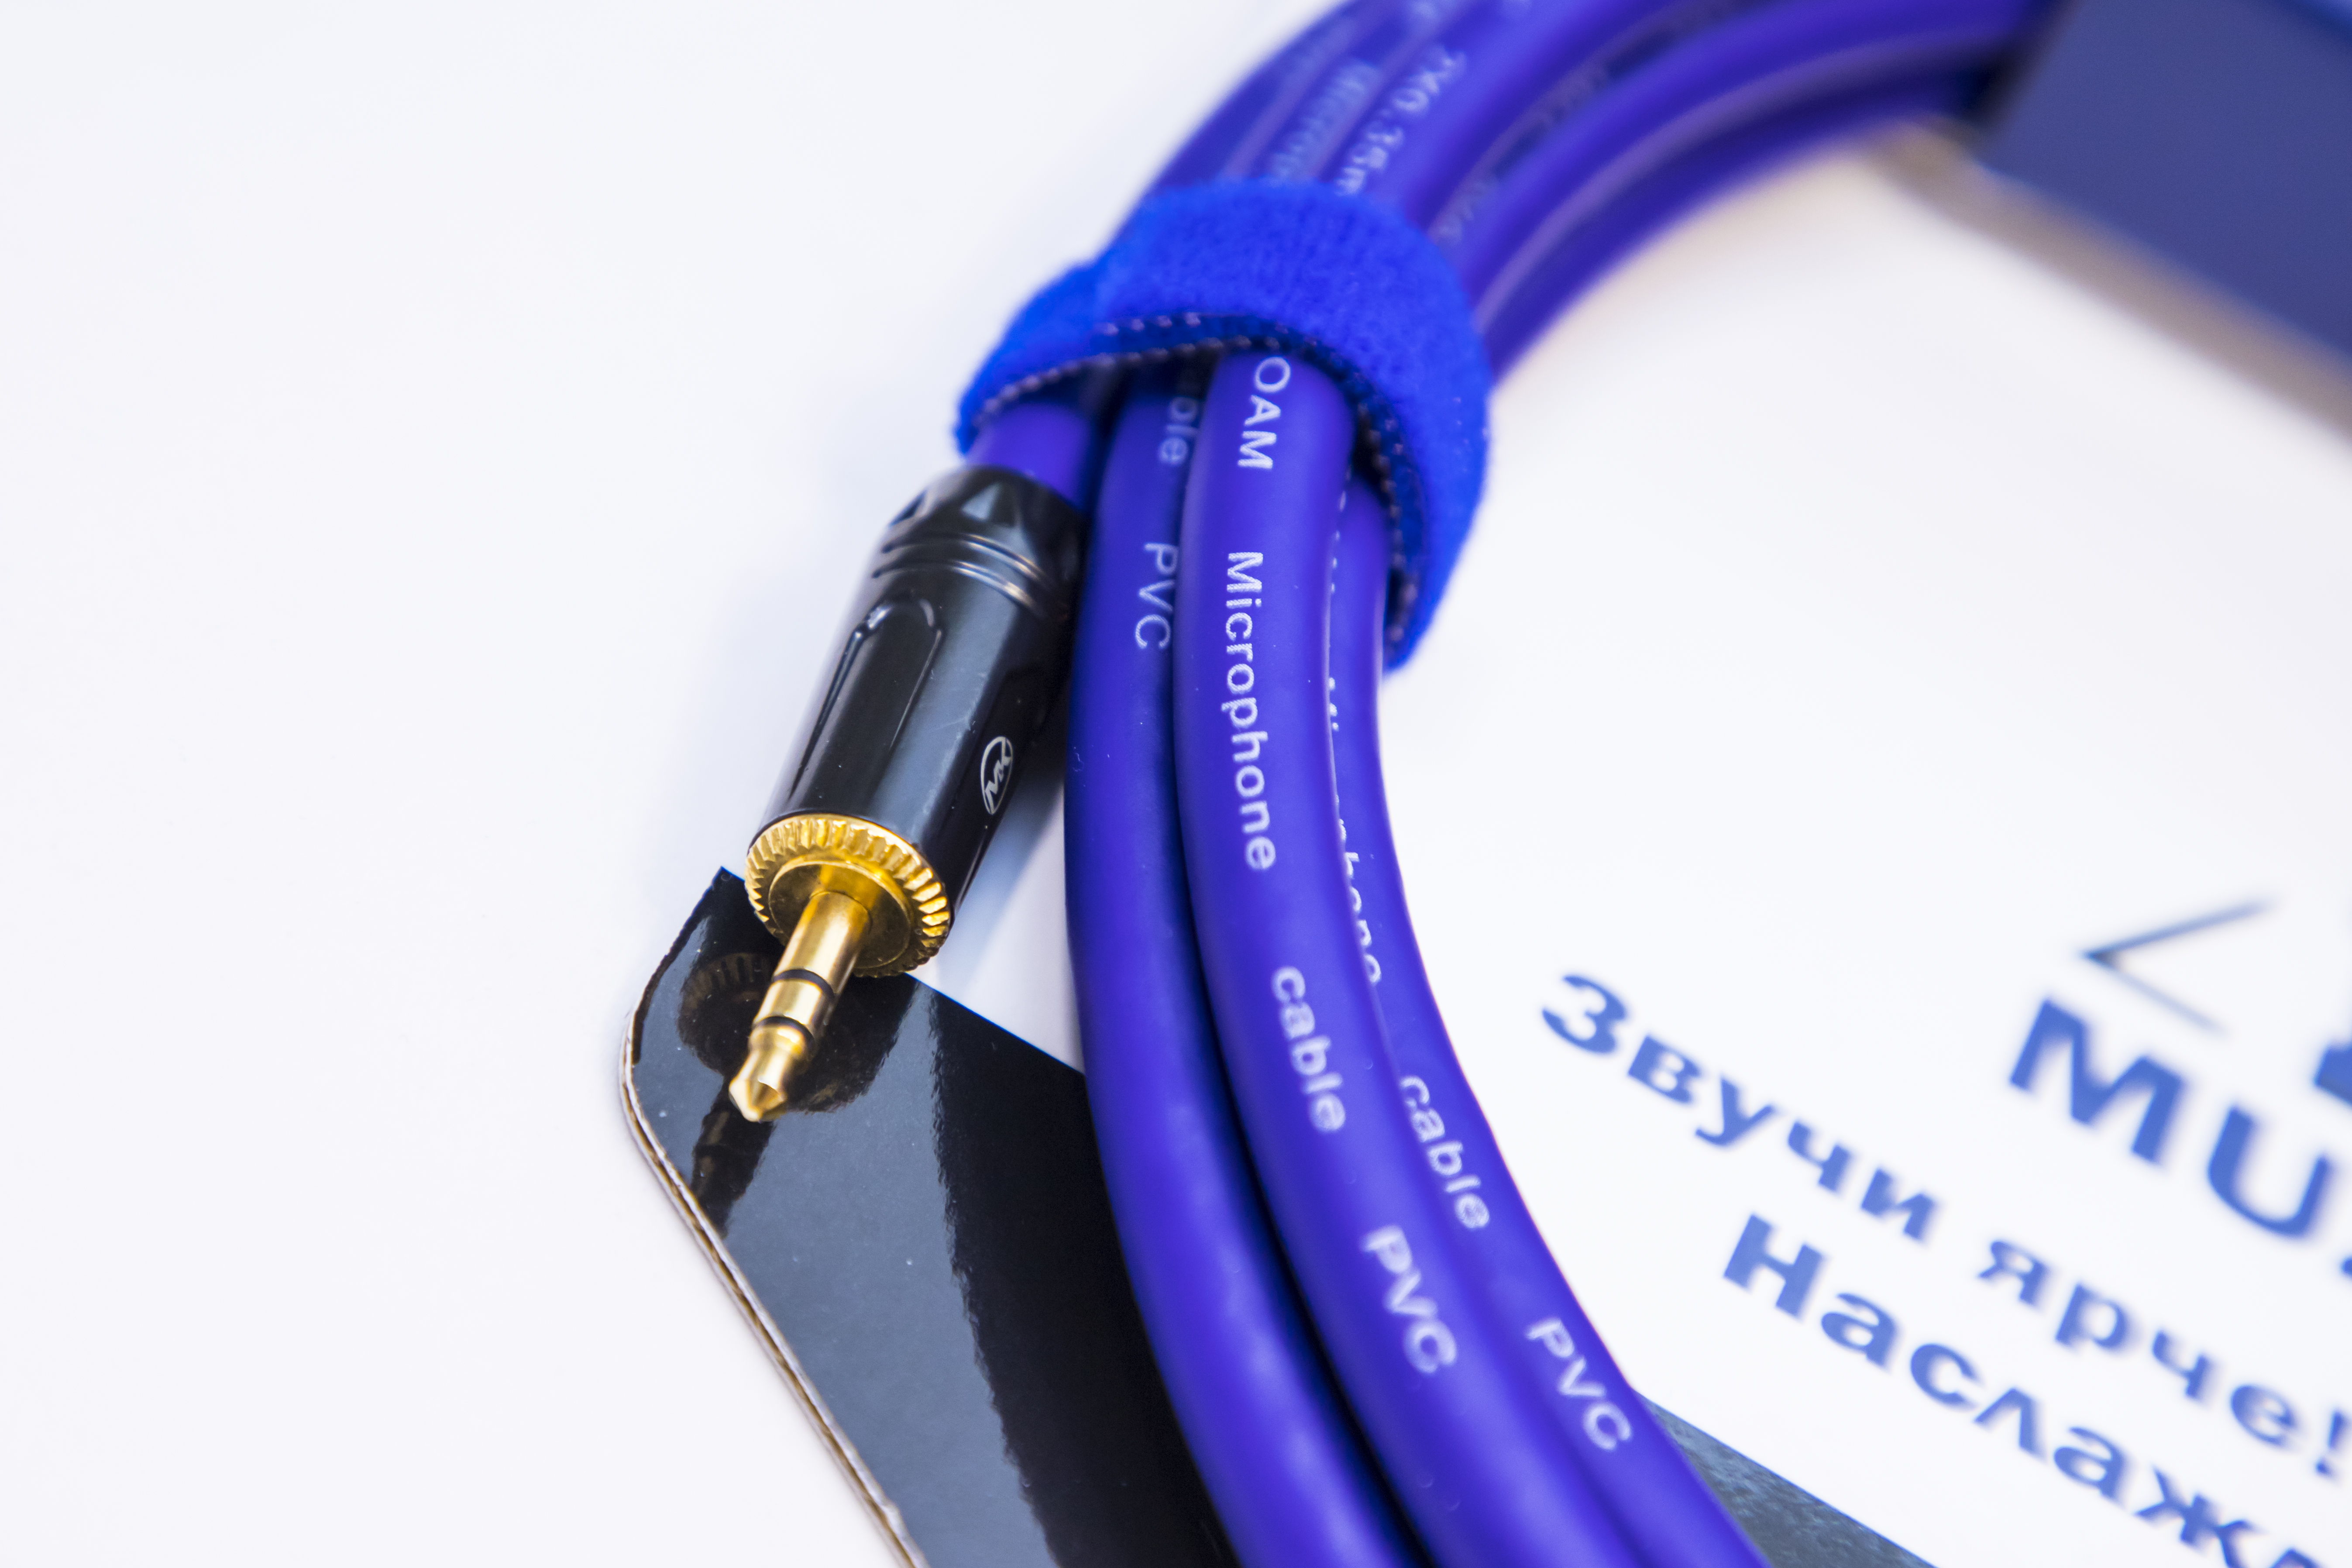 Аудио кабель MUZKABEL MFXMK1V - 8 метров, MINI JACK (3.5) - MINI JACK (3.5)